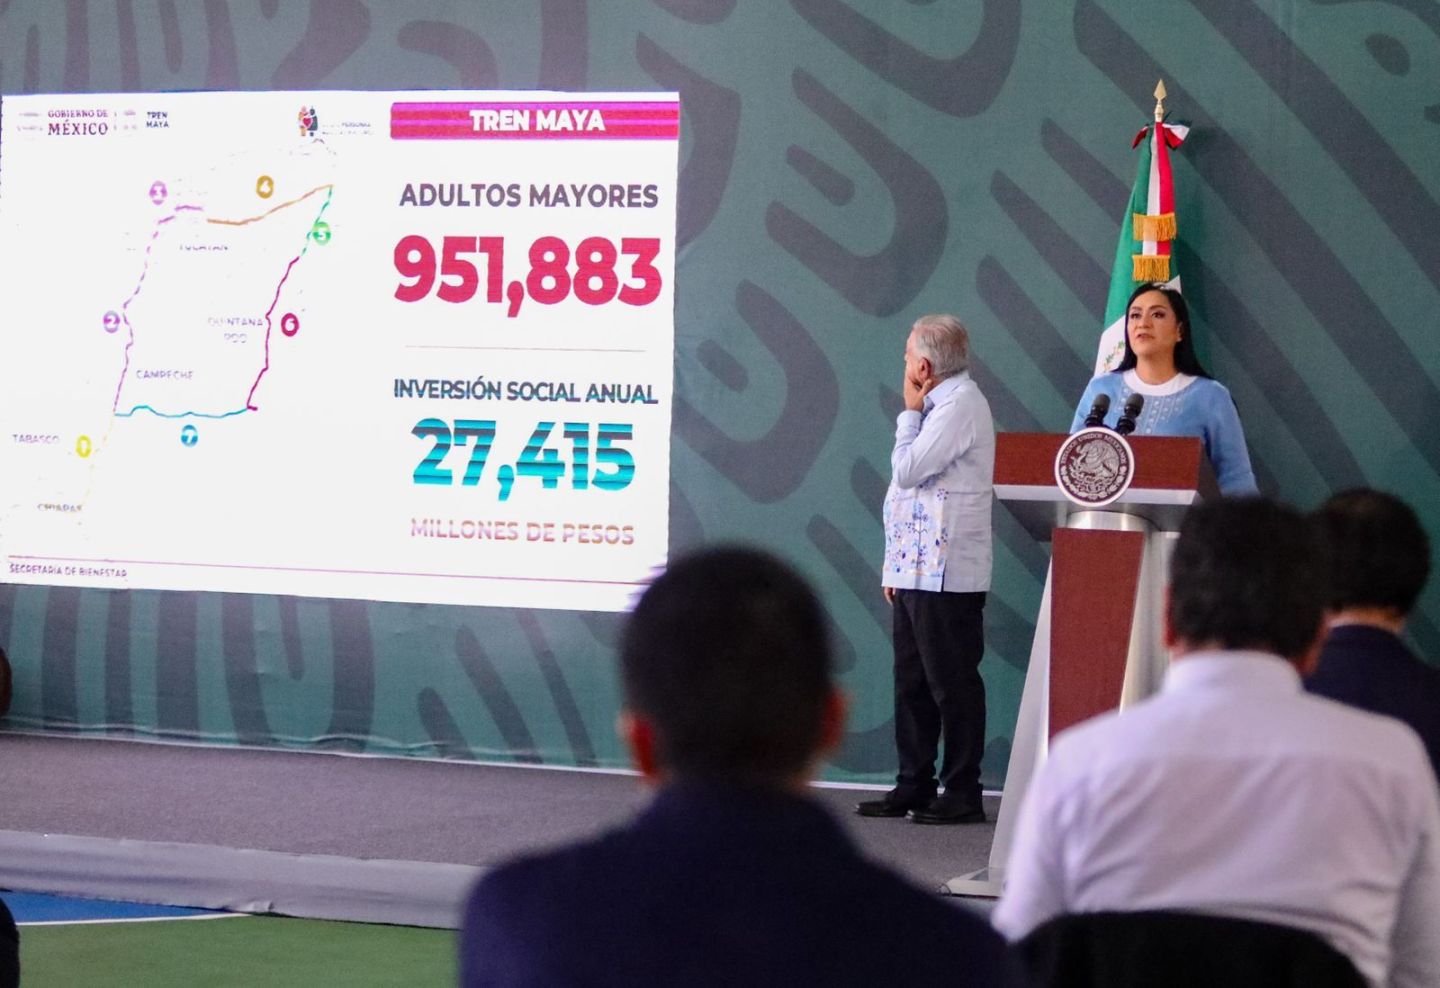 Llega Pensión de las Personas Adultas Mayores a más de 951 mil derechohabientes en ruta del Tren Maya